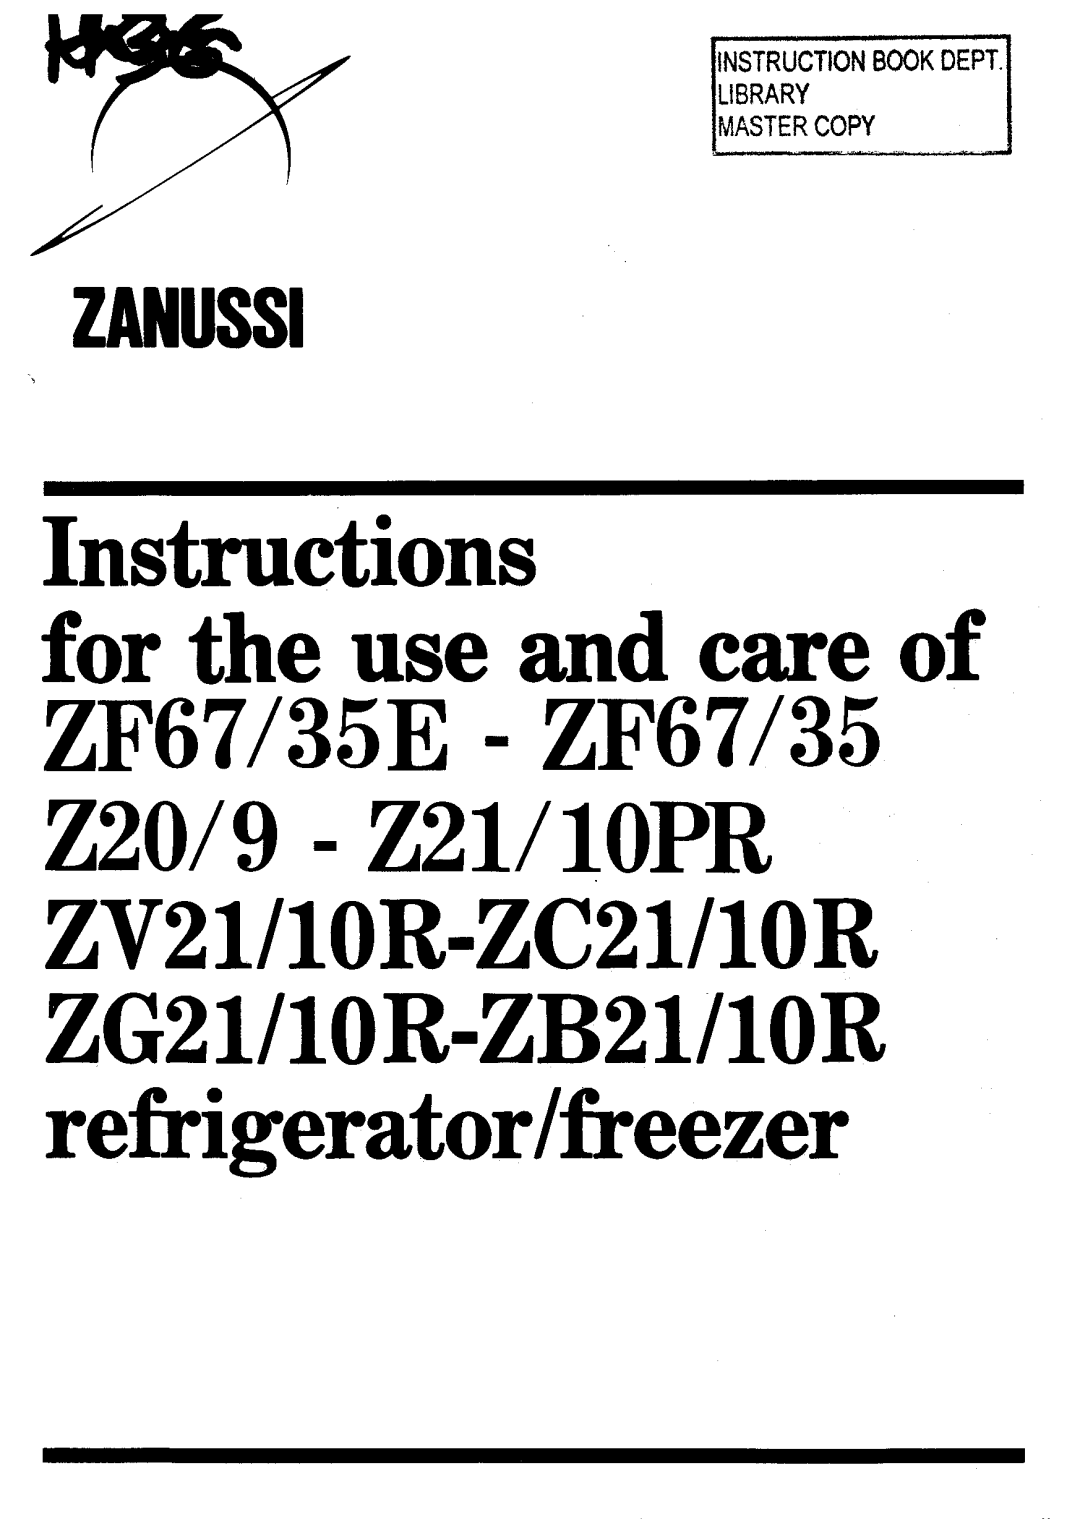 Zanussi 9 - Z21, 35E - ZF67/35, ZV21, 10PR, 10R-ZC21, 10R-ZB21 manual 